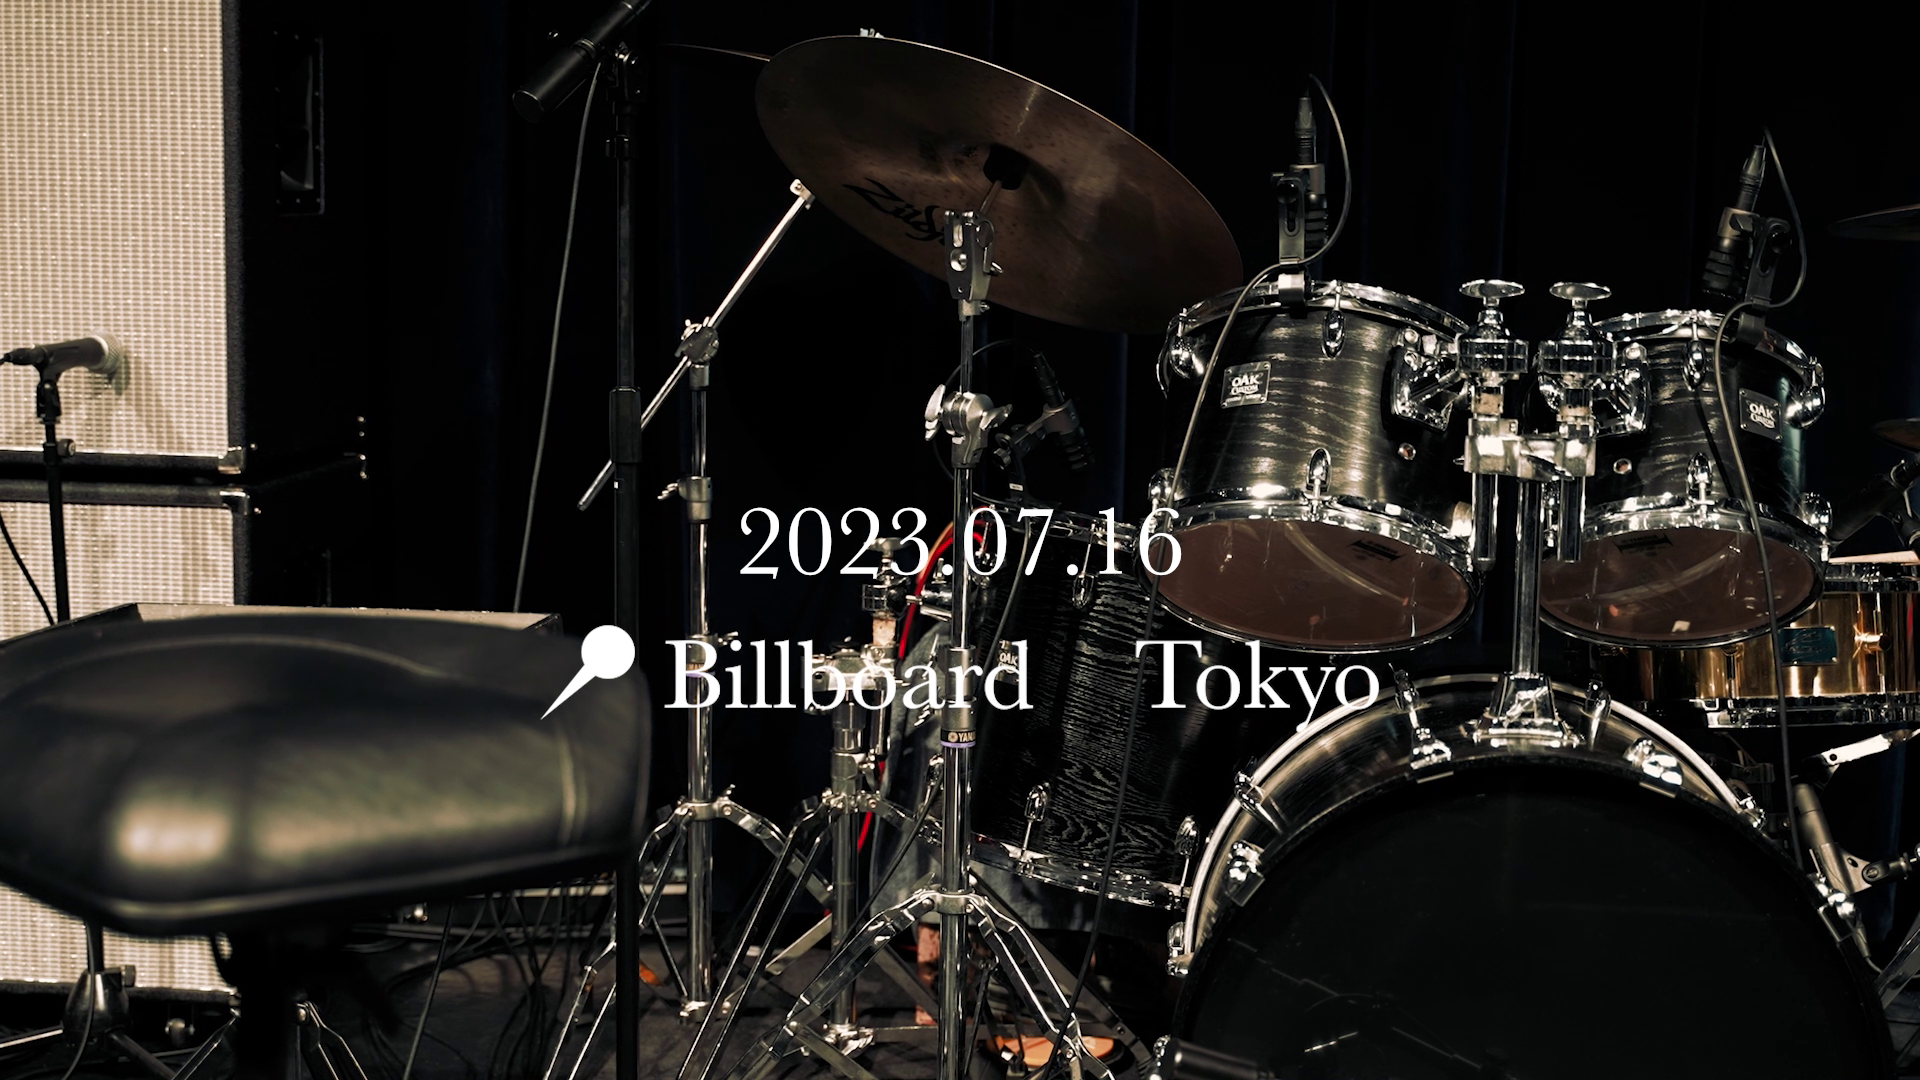 【会員限定】KIM SUNGJE Summer Live 2023  Billboard Live メイキングフィルム